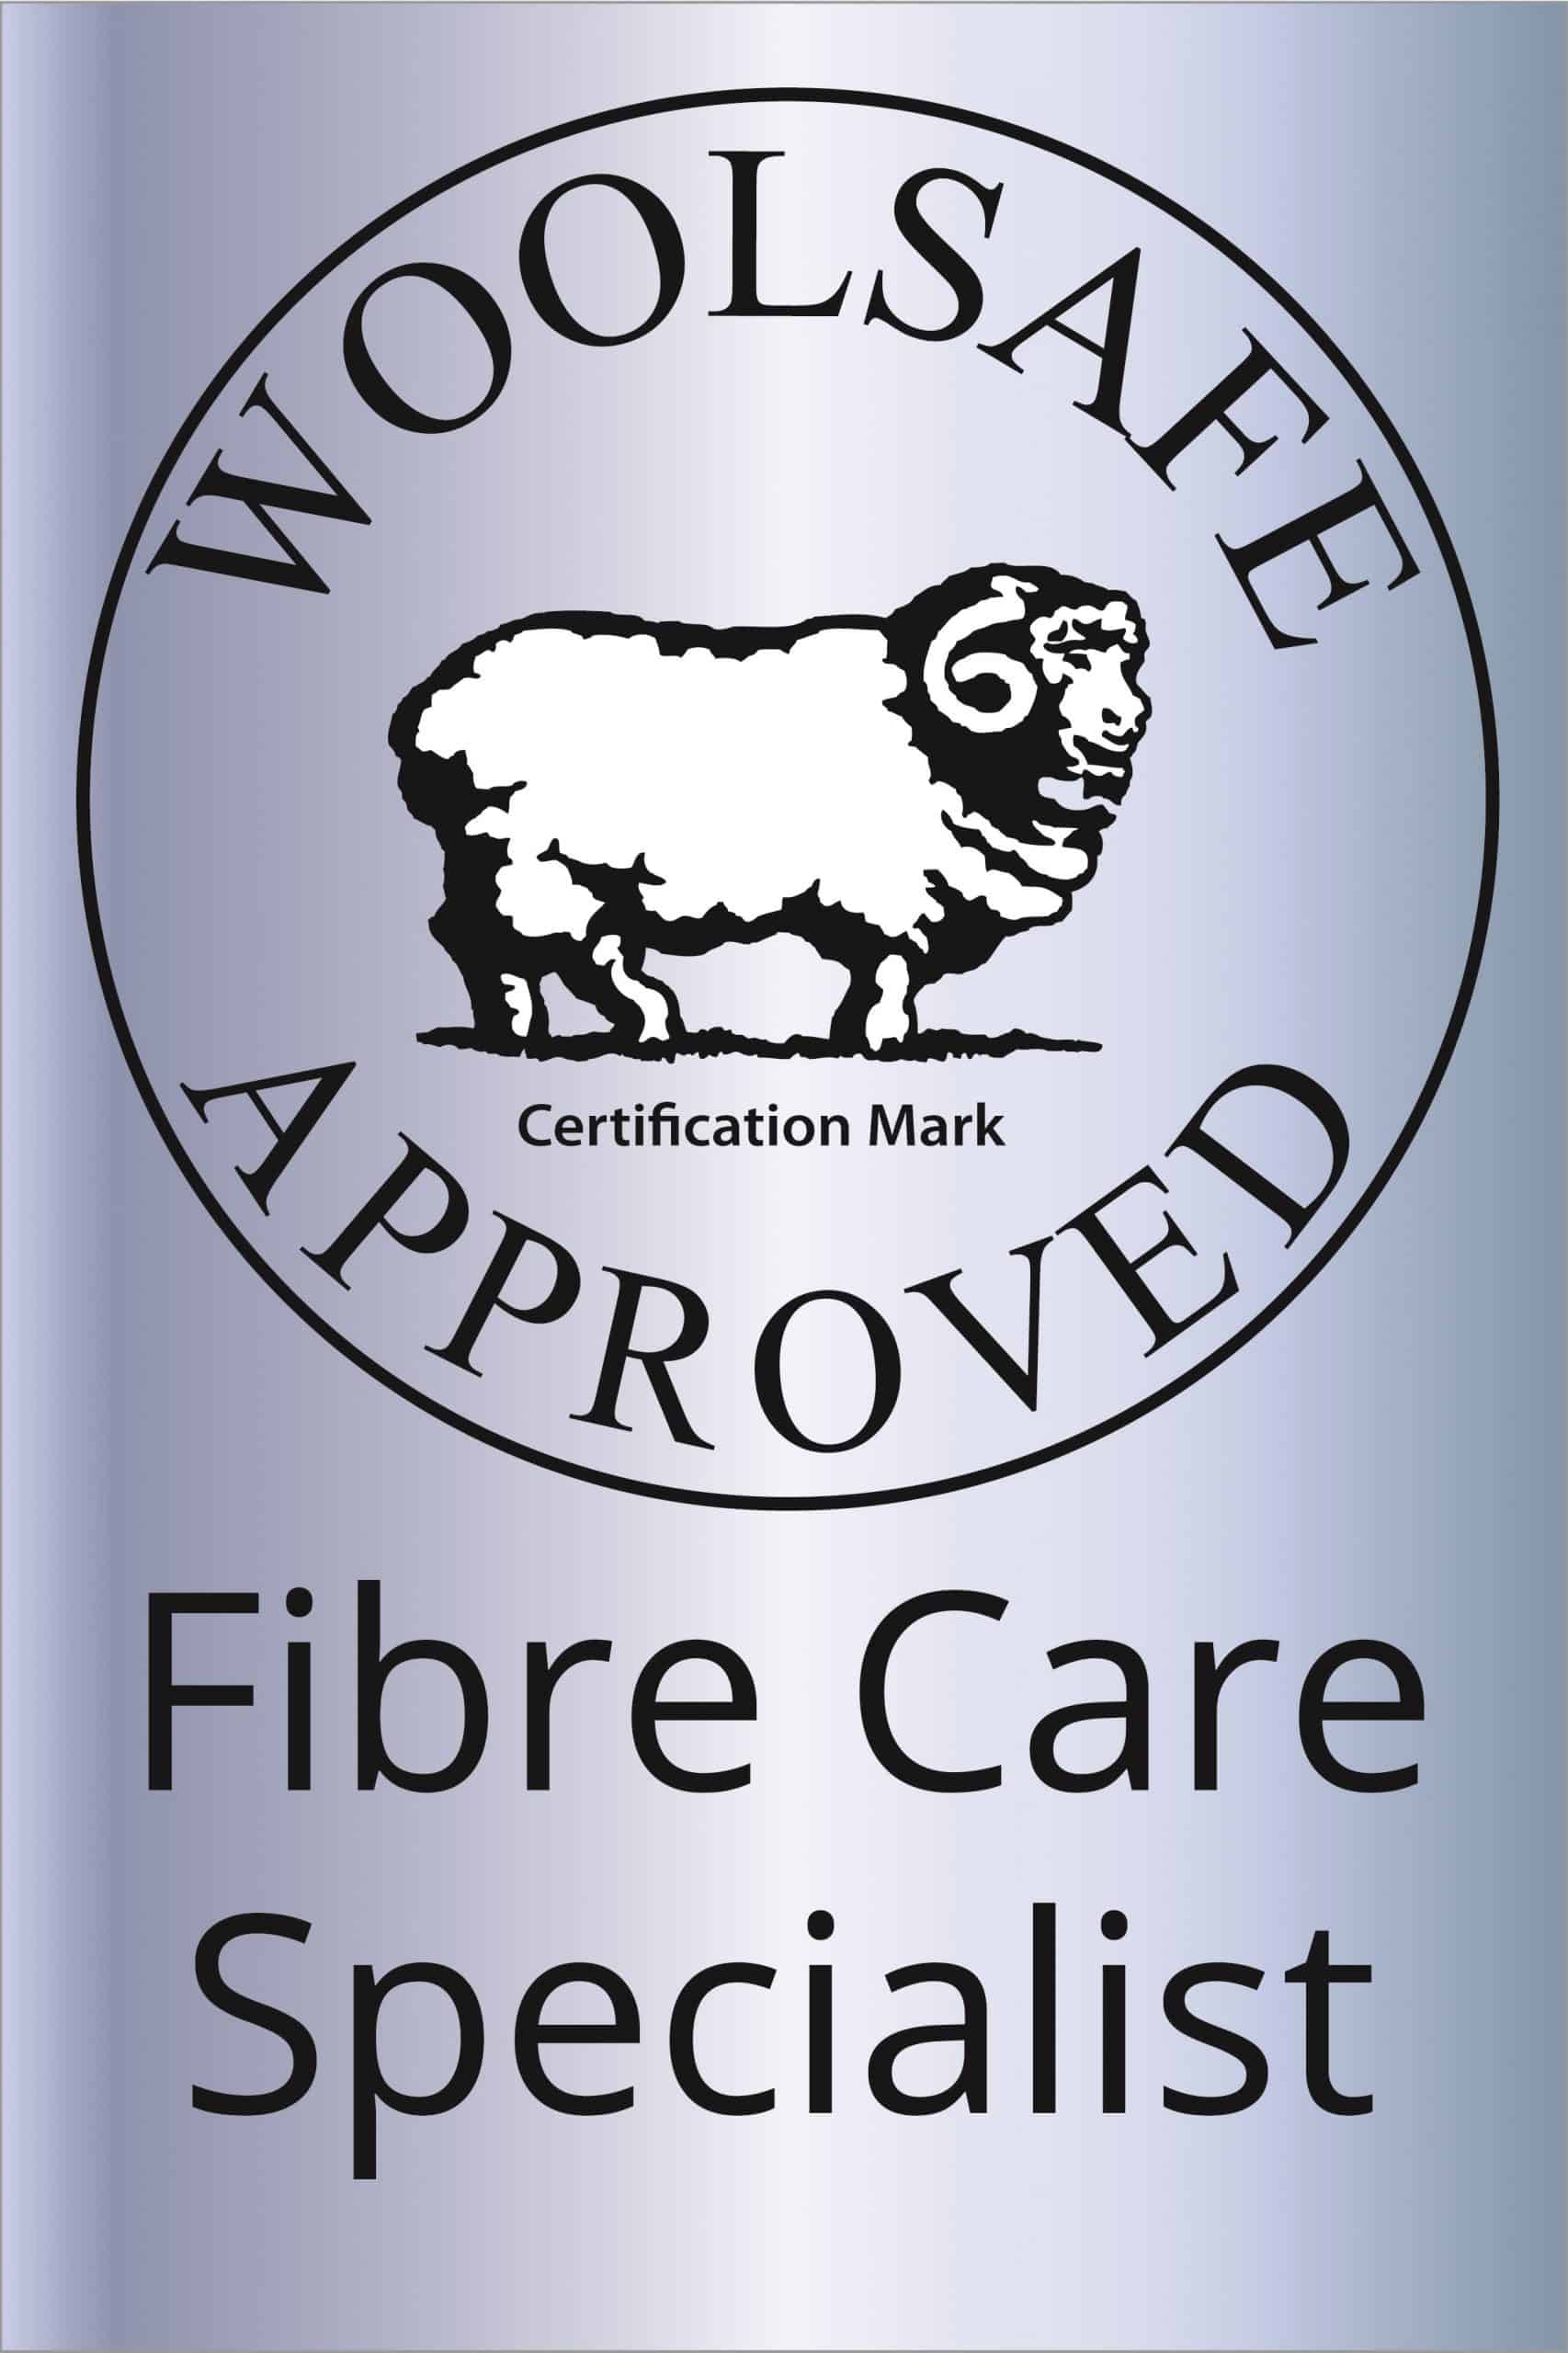 wool safe fibre care specialist